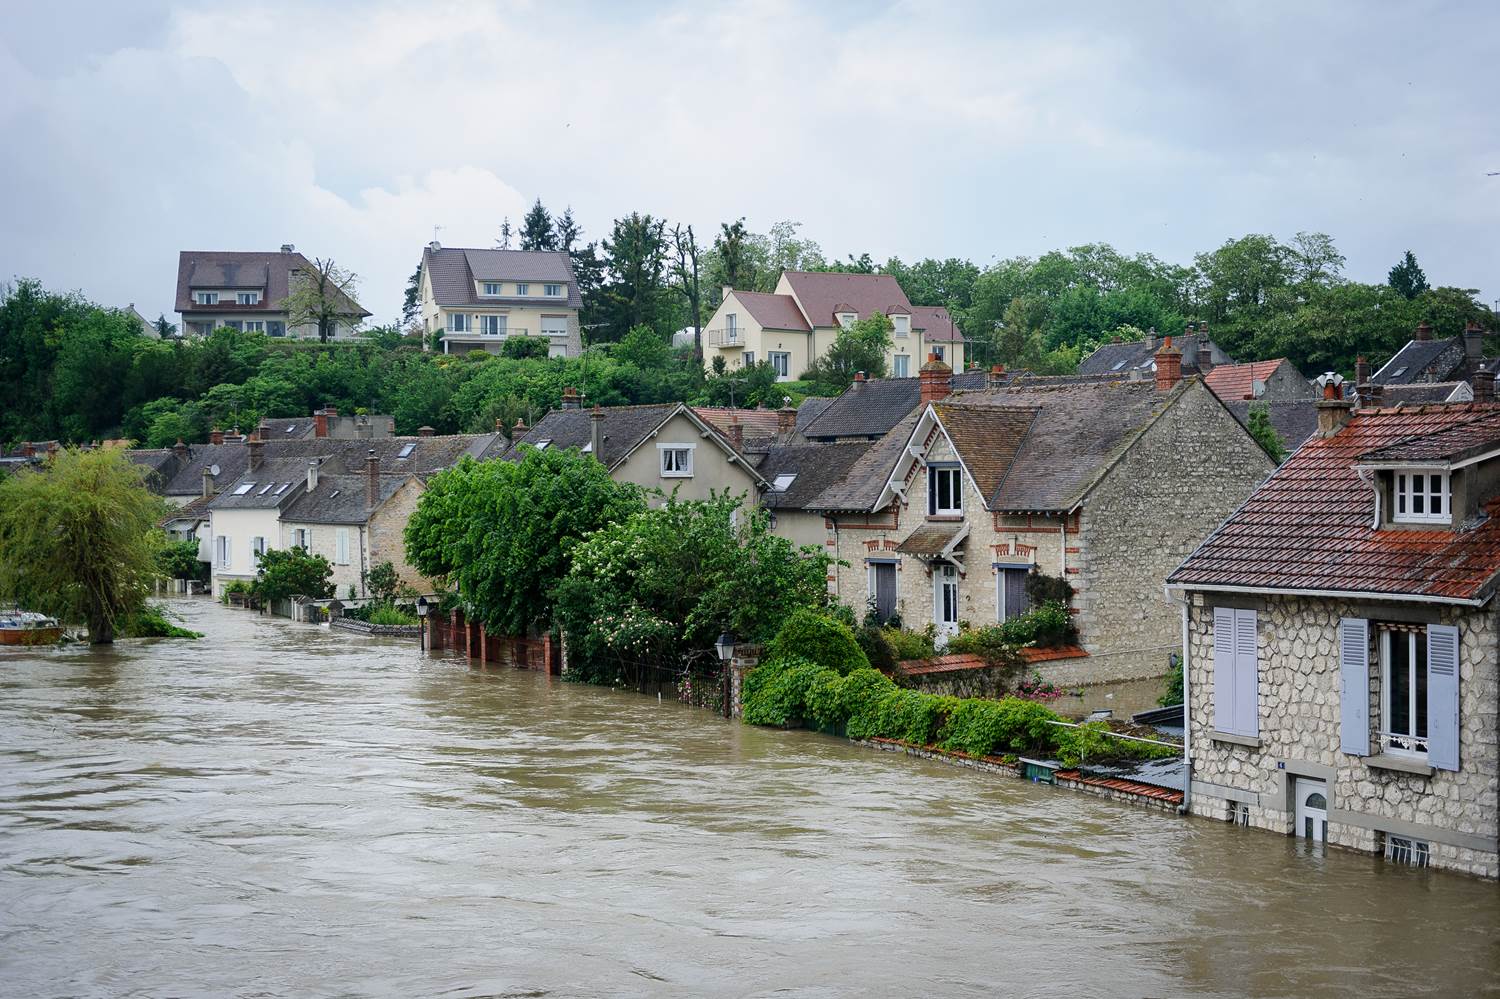 Catastrophes climatiques, blackout...: Des villes normandes se soumettent à des stress tests pour anticiper les chocs